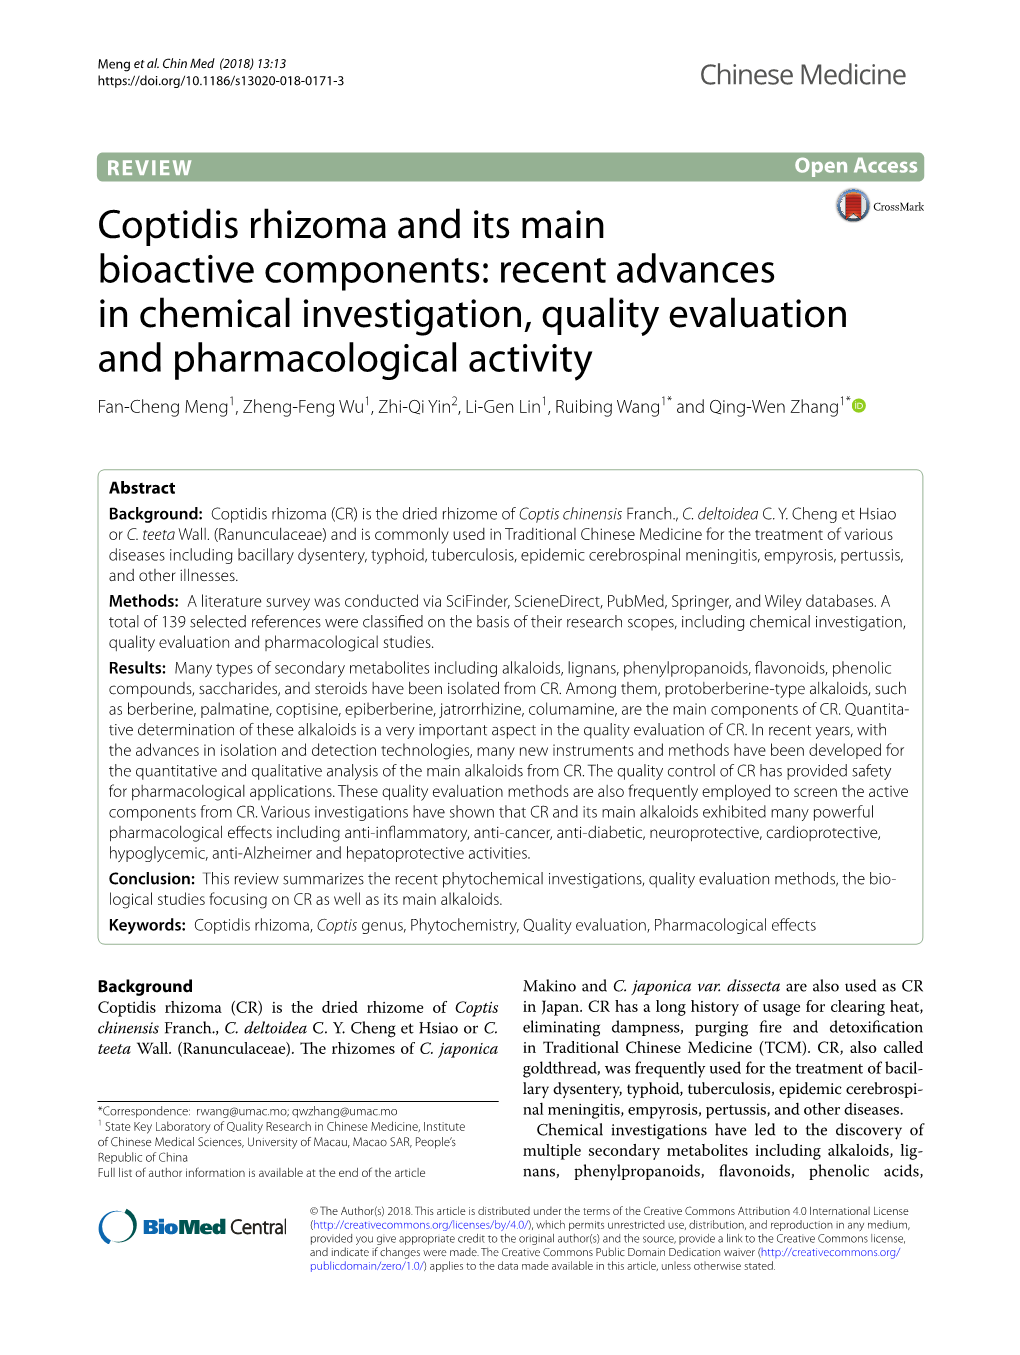 Coptidis Rhizoma and Its Main Bioactive